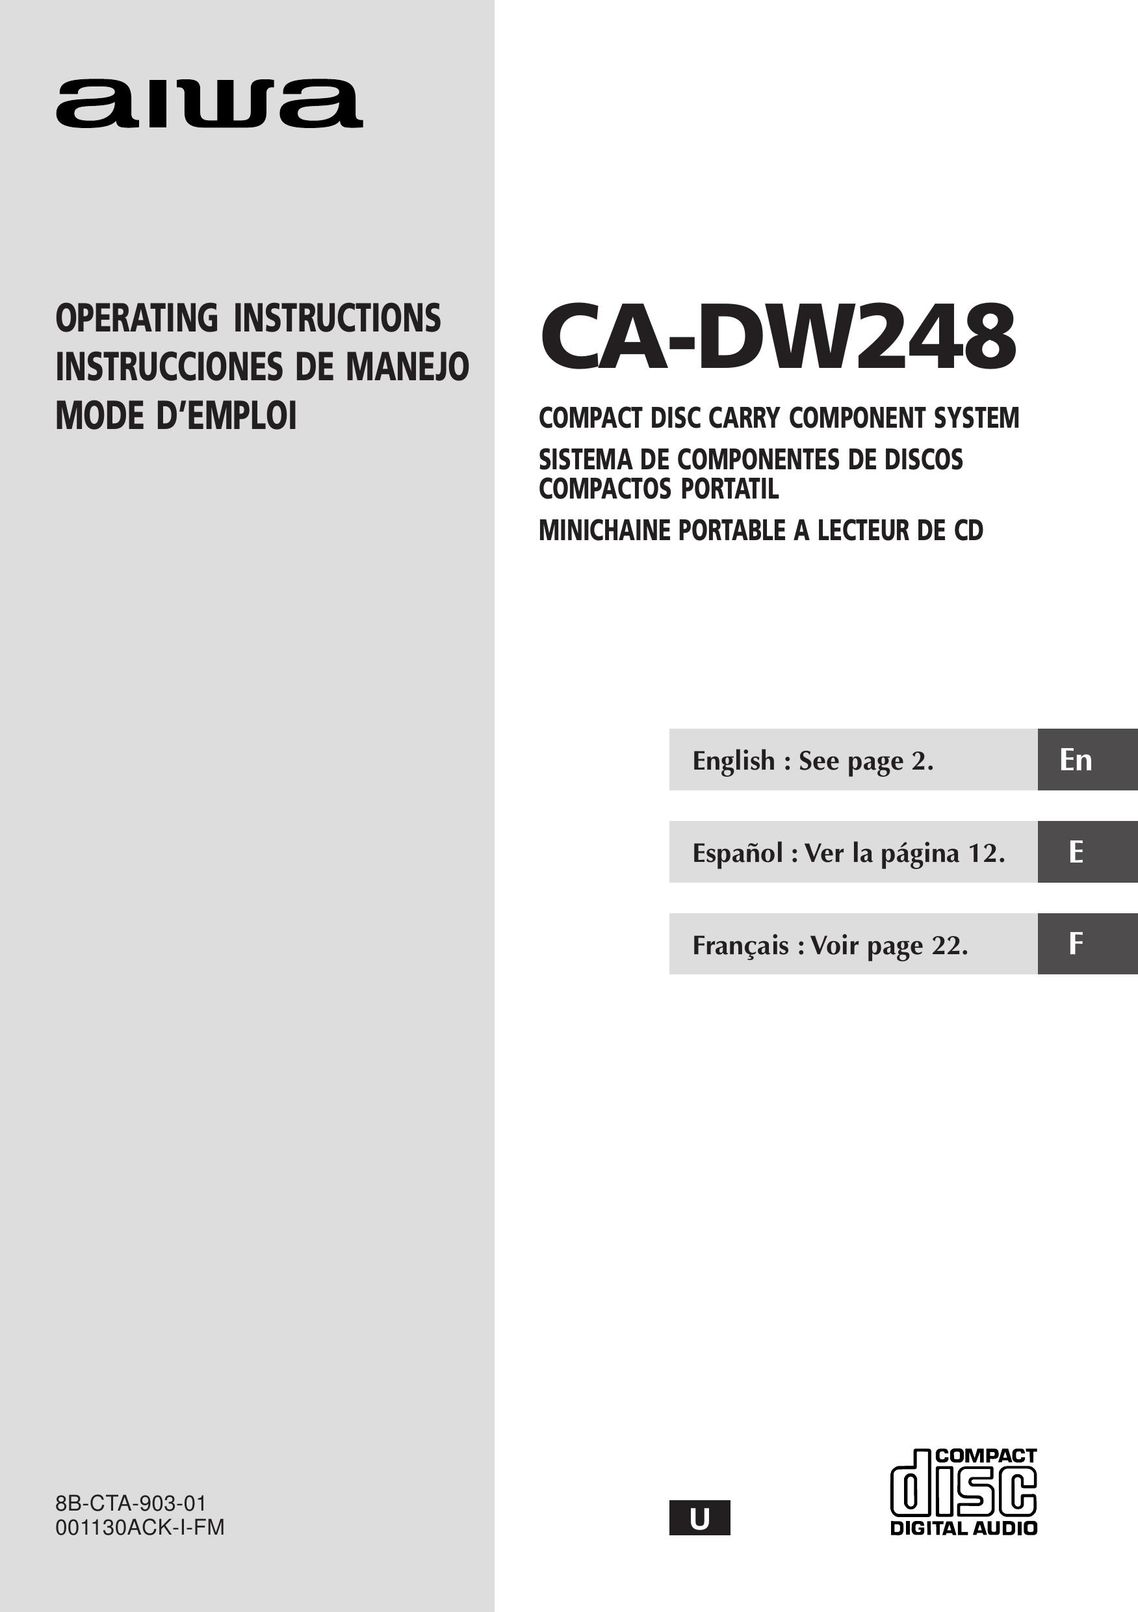 Aiwa CA-DW248 CD Player User Manual